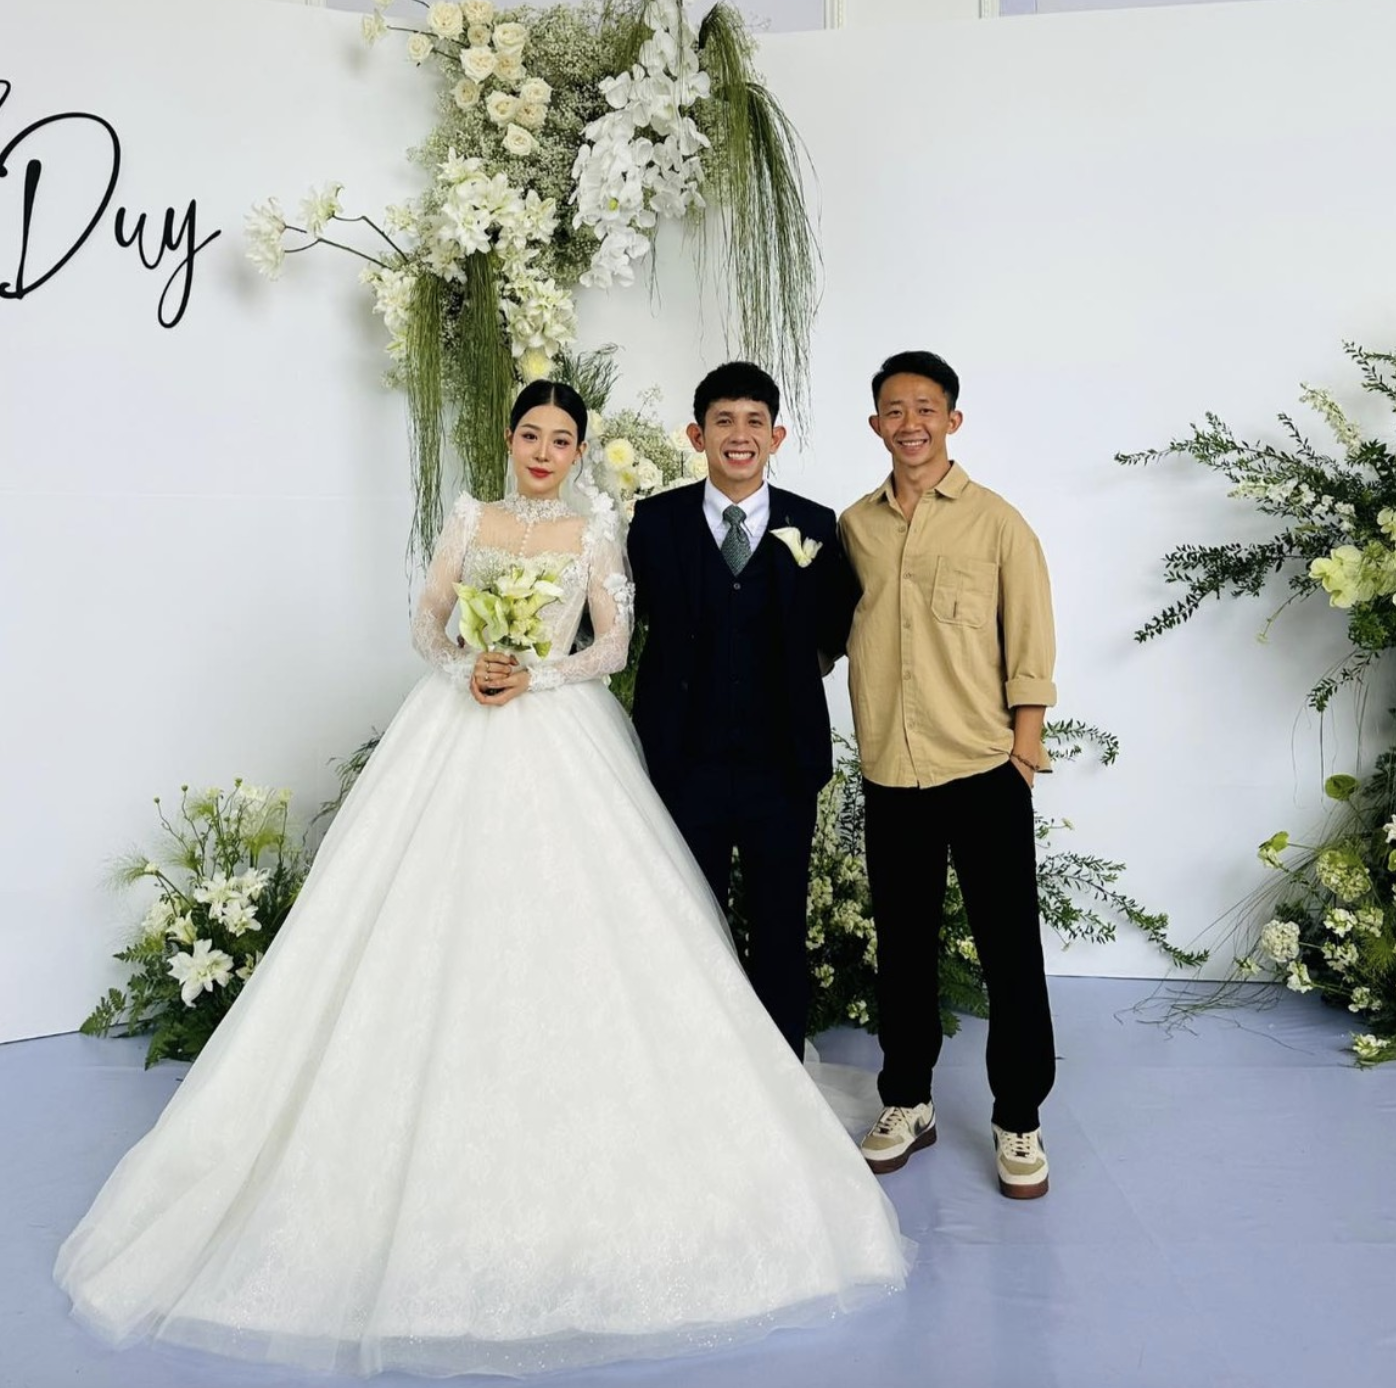 Tiền vệ của HAGL - Châu Ngọc Quang (bìa phải) dự đám cưới của Hồng Duy tại Gia Lai